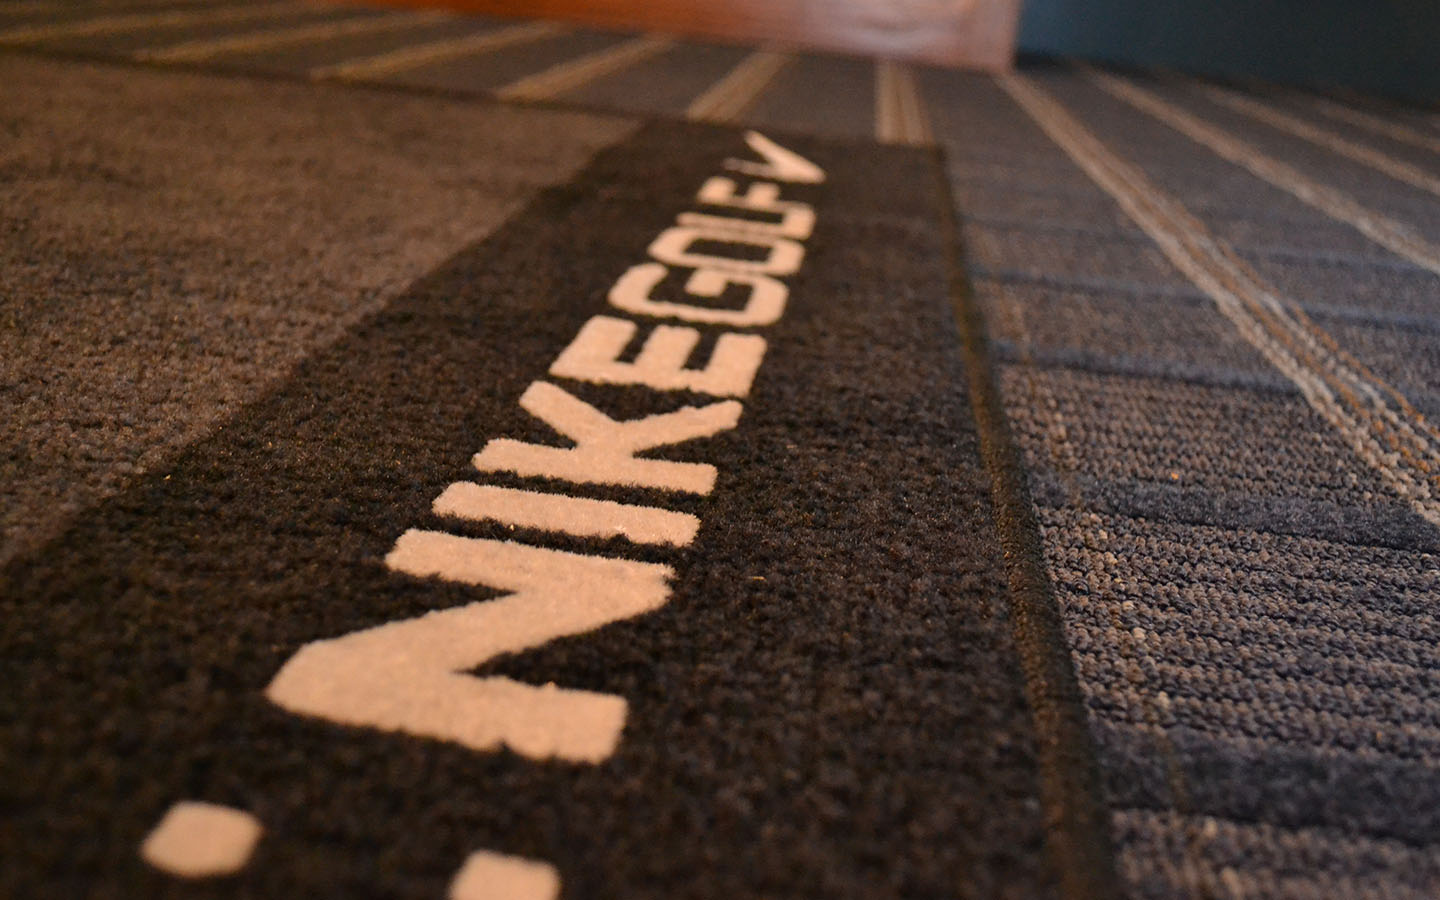 Close up of floormat. Text: Nikegolf.